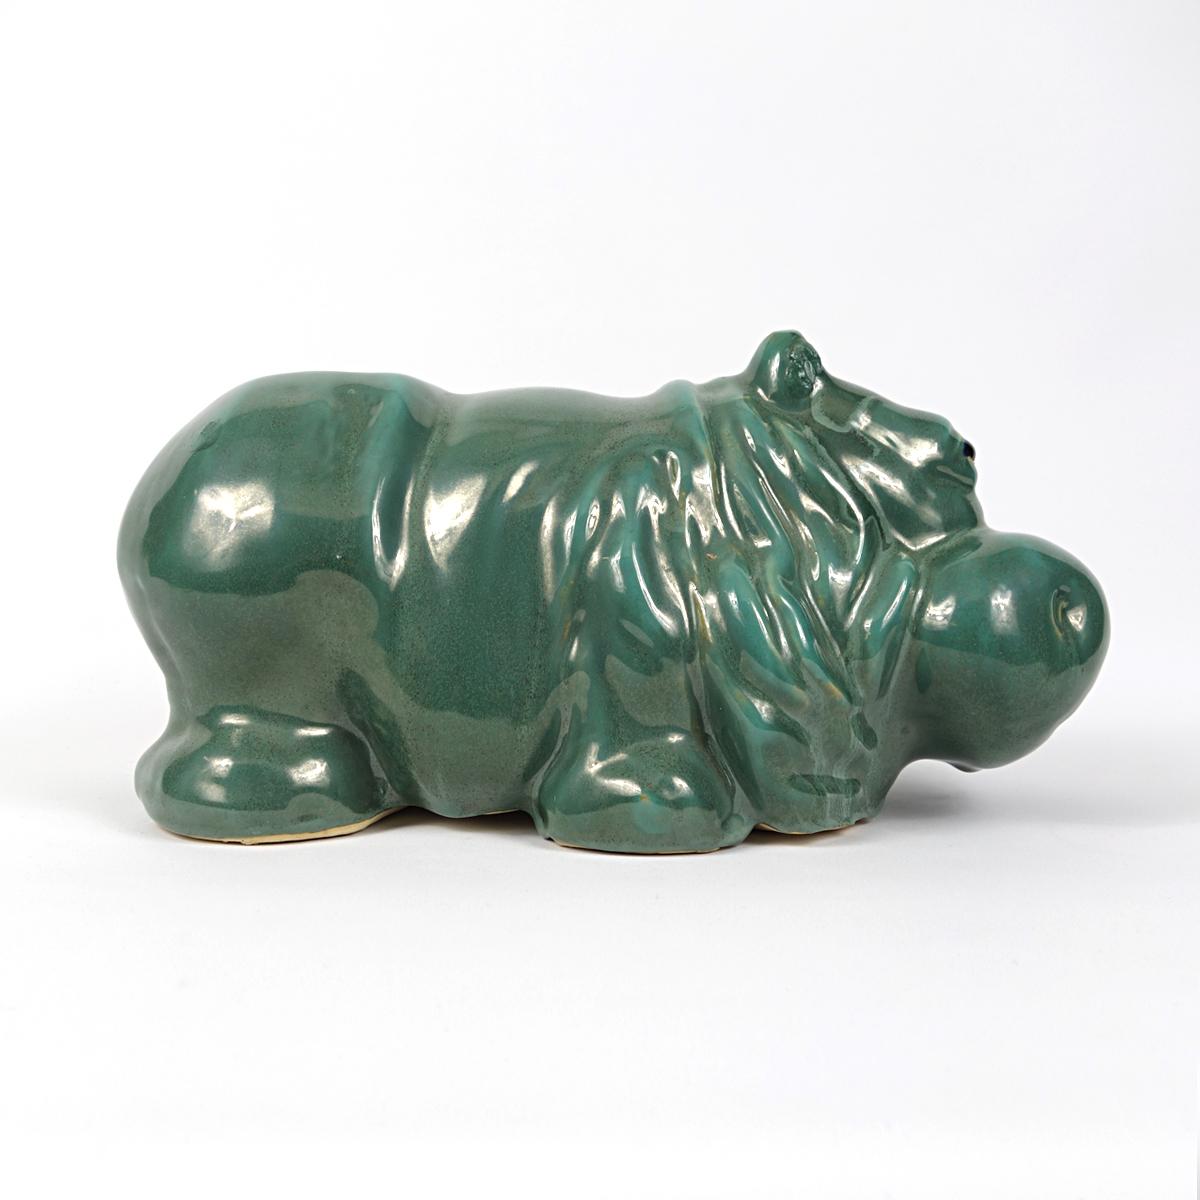 Dutch Big Green Cheerful Ceramic Statue of a Hippopotamus For Sale